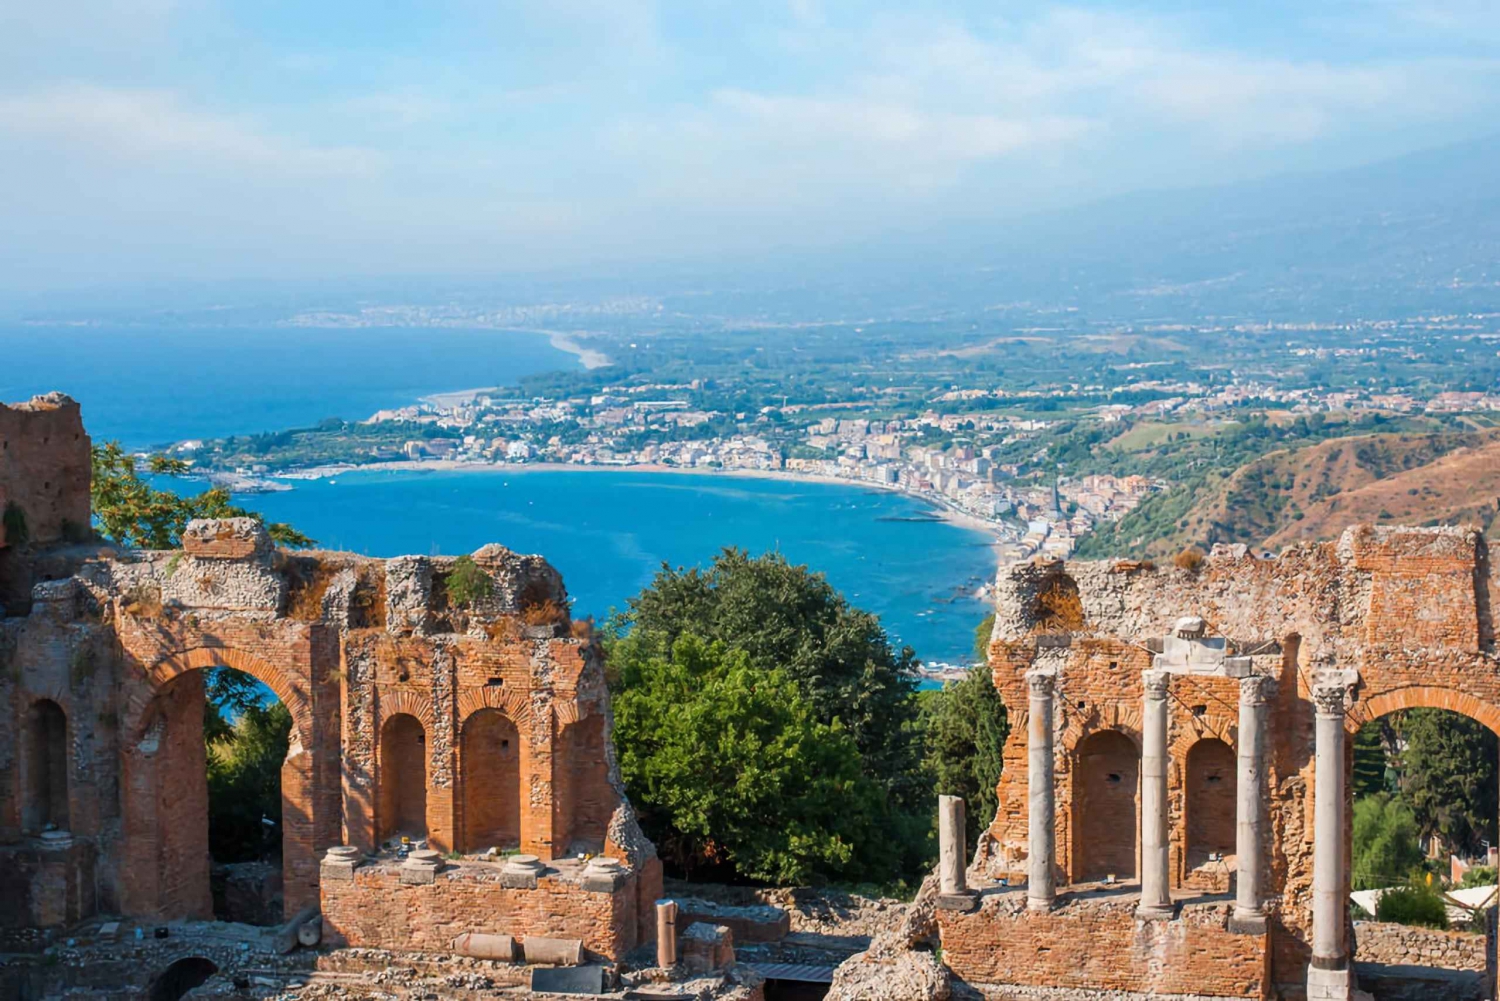 Escursione a terra a Messina: viaggio privato a Taormina ed Etna